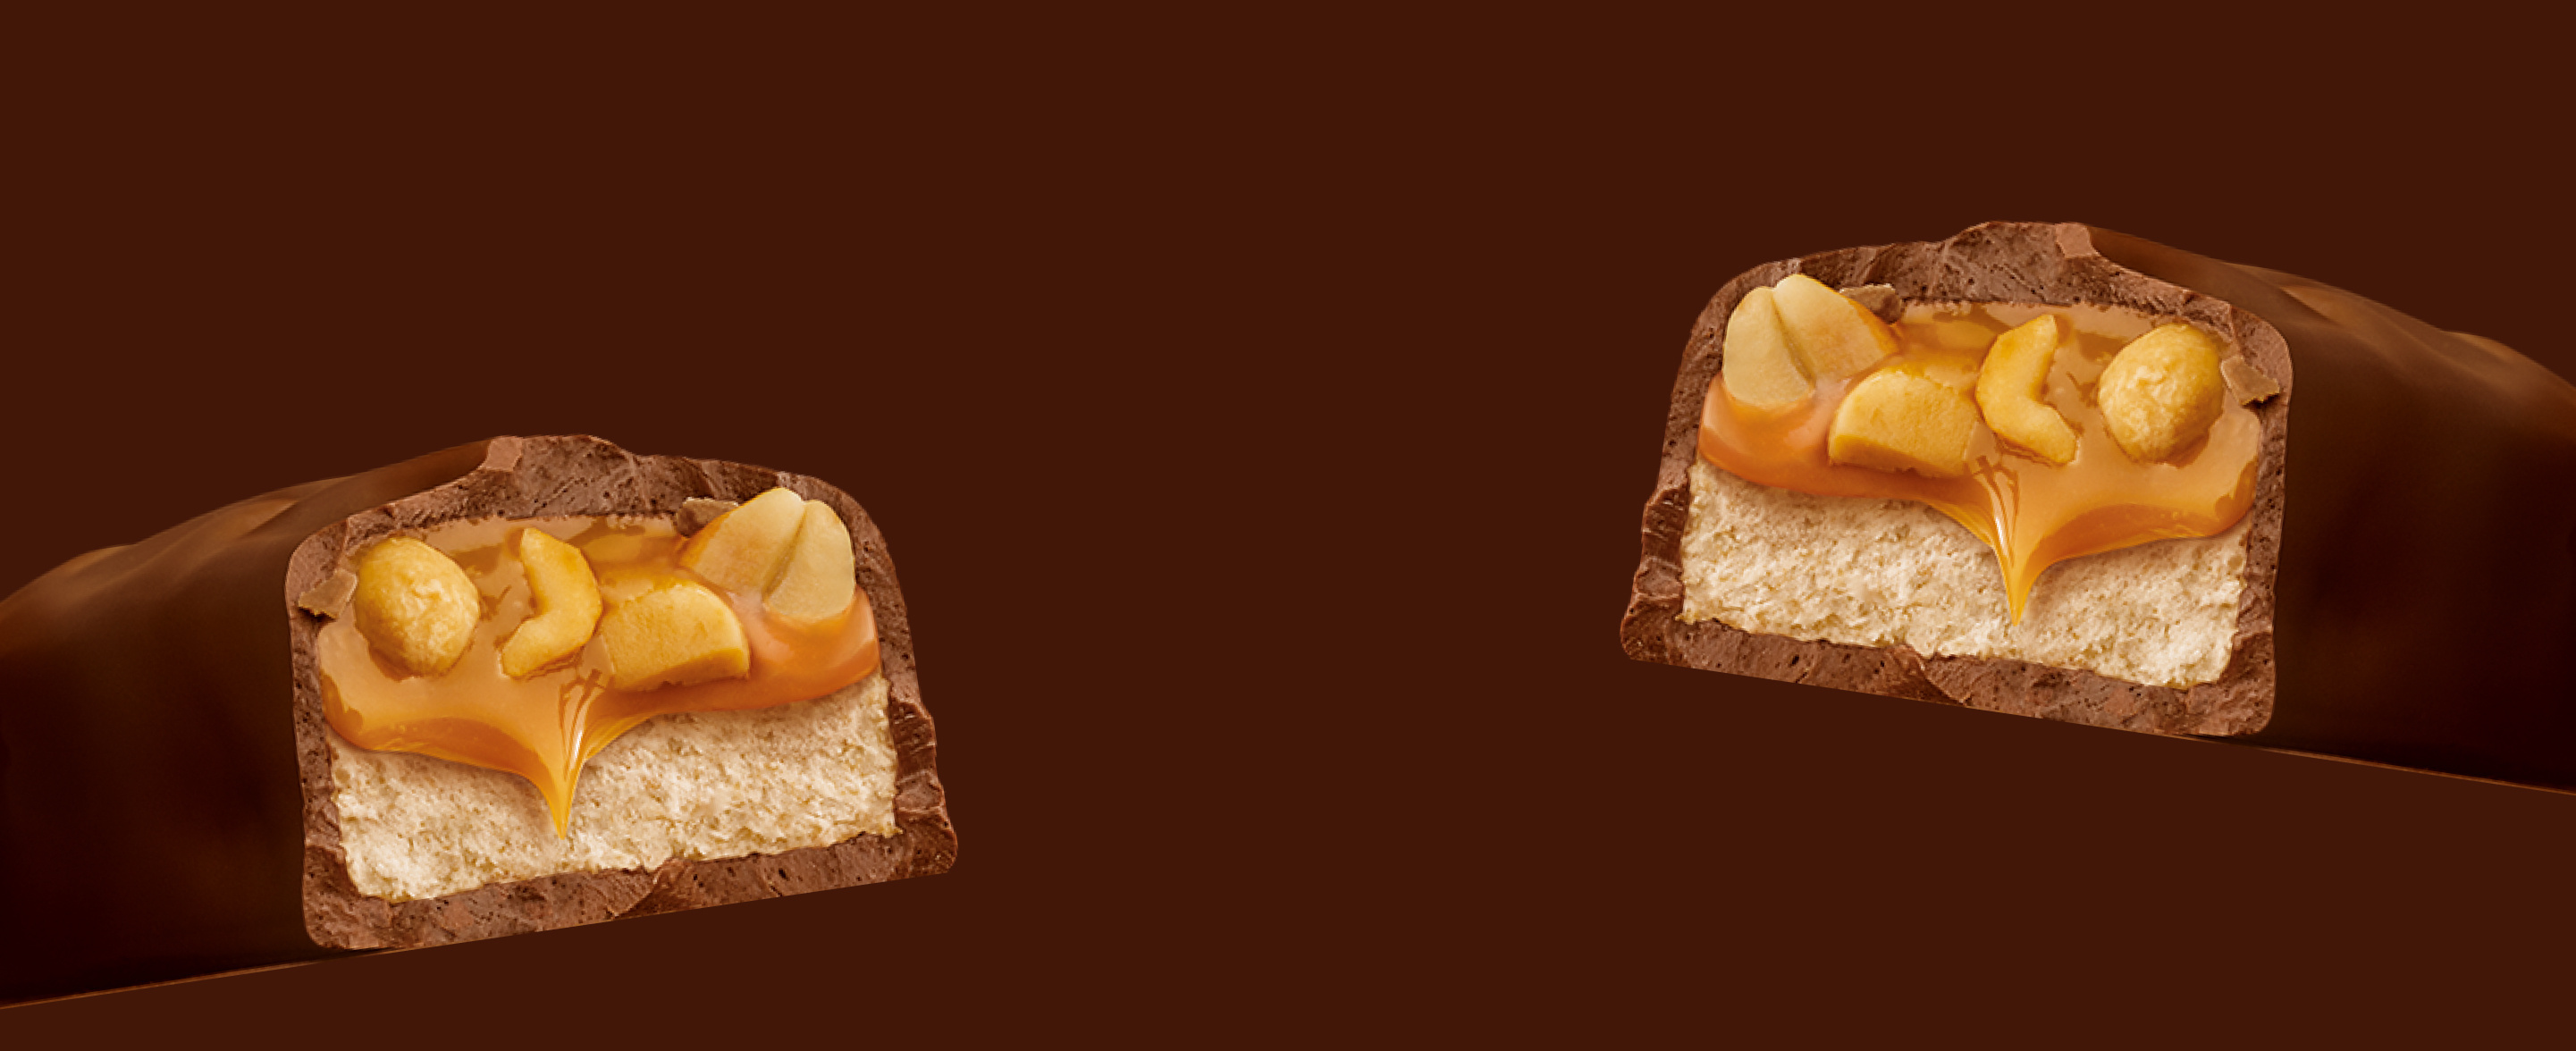 Zwei Querschnitte eines klassischen Snickers-Schokoriegels auf braunem Hintergrund